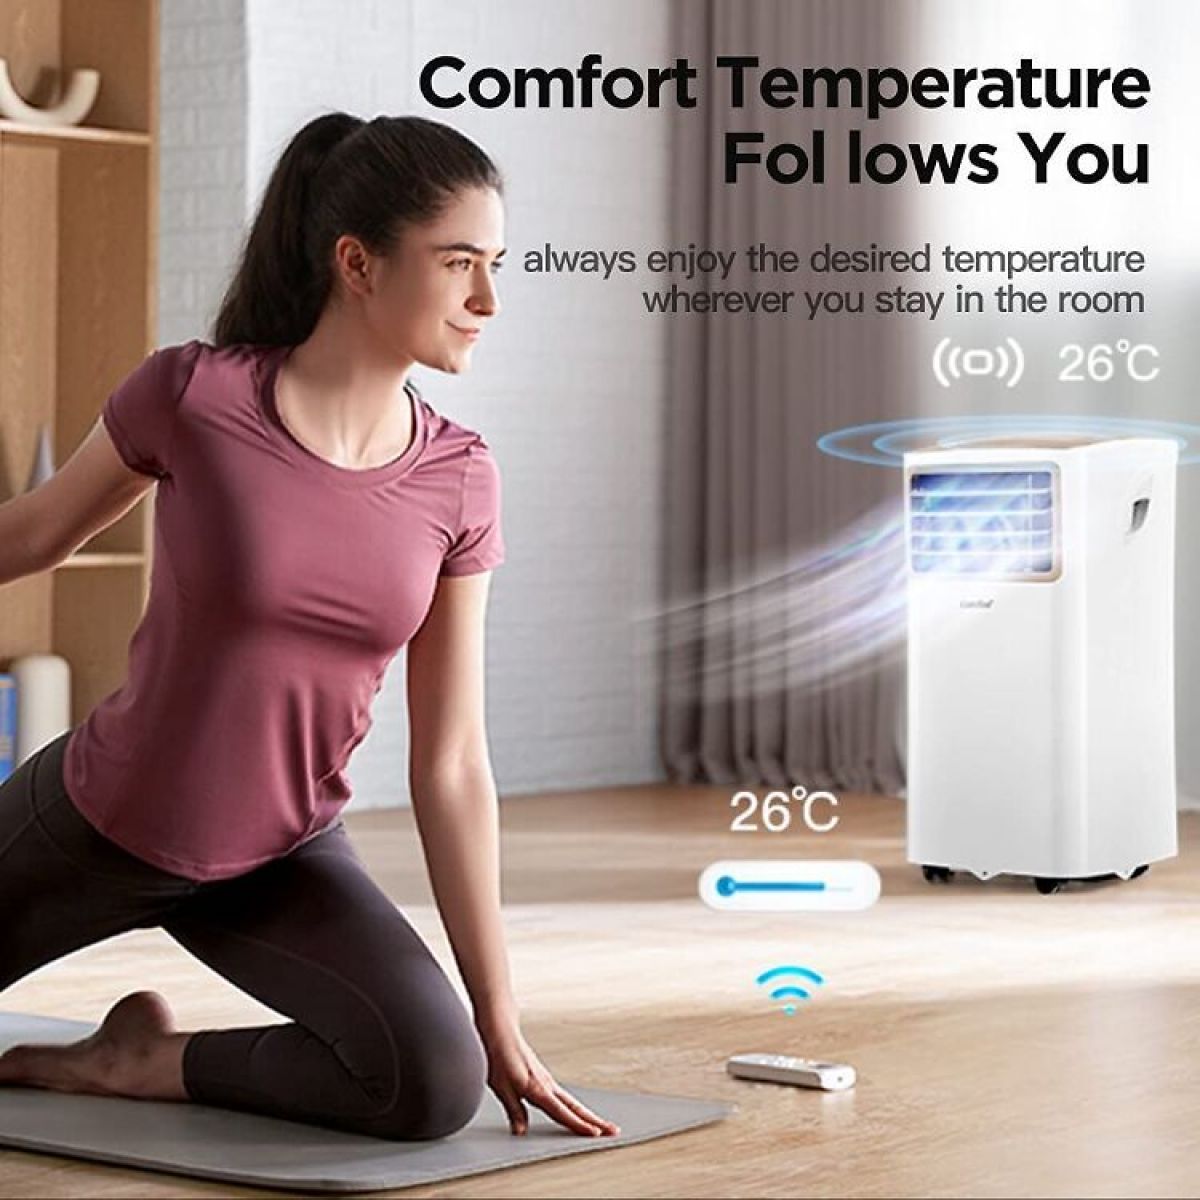 Õhukonditsioneer Comfee Easy Cool 2.0